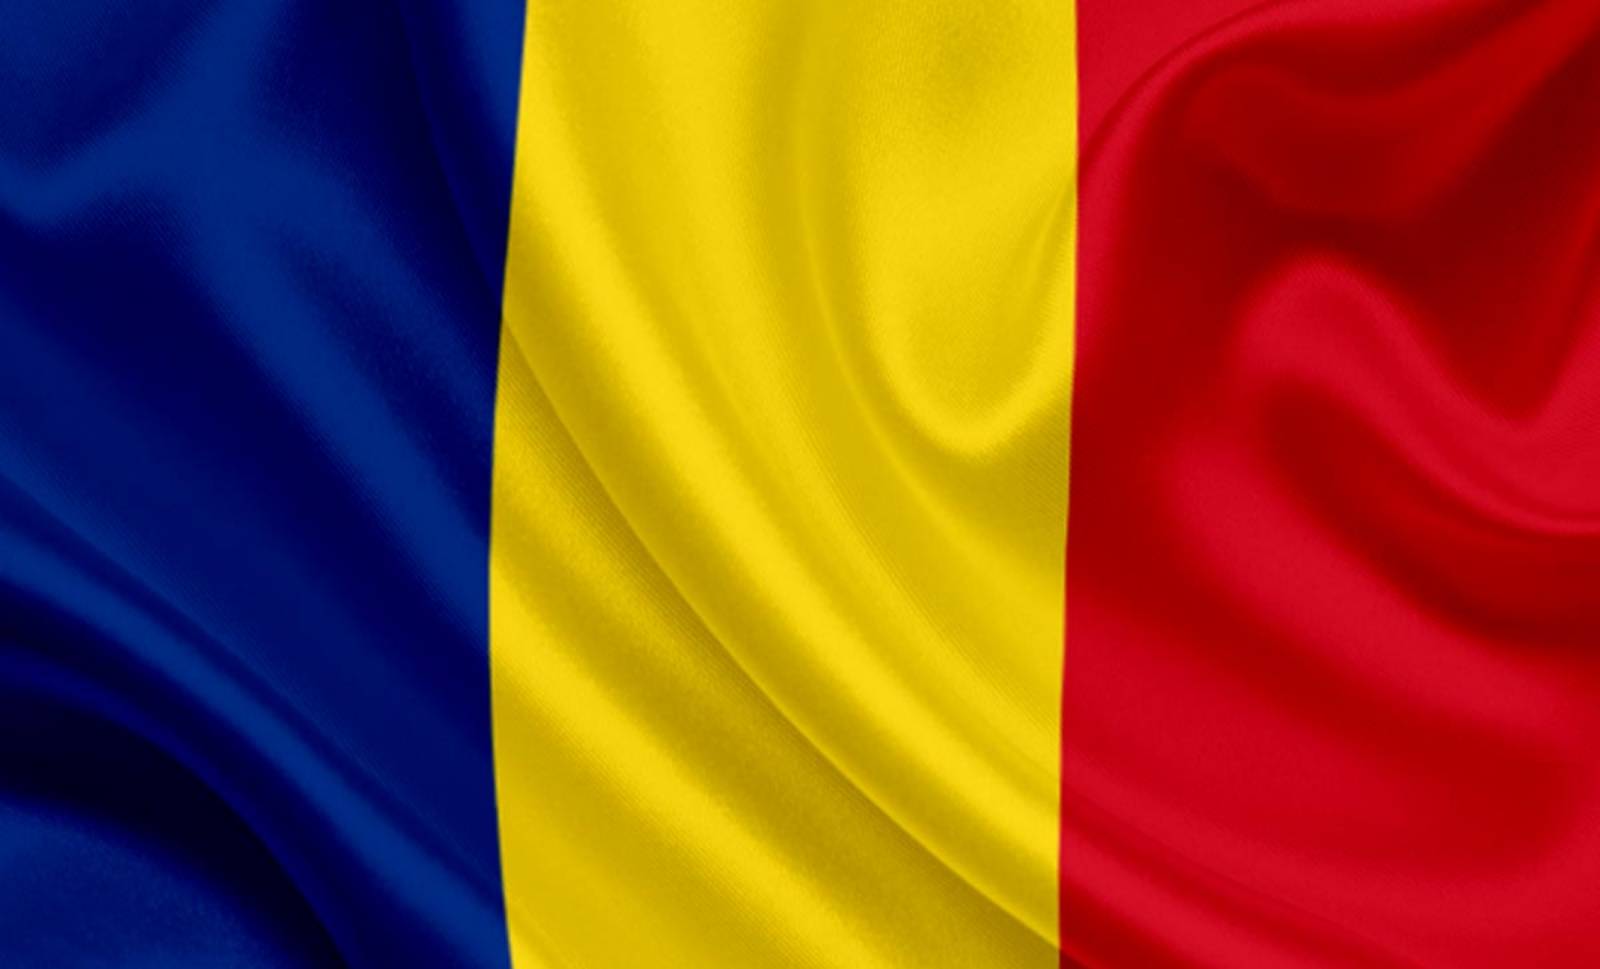 alarmieren Sie die rumänische Regierung Tepe Olx